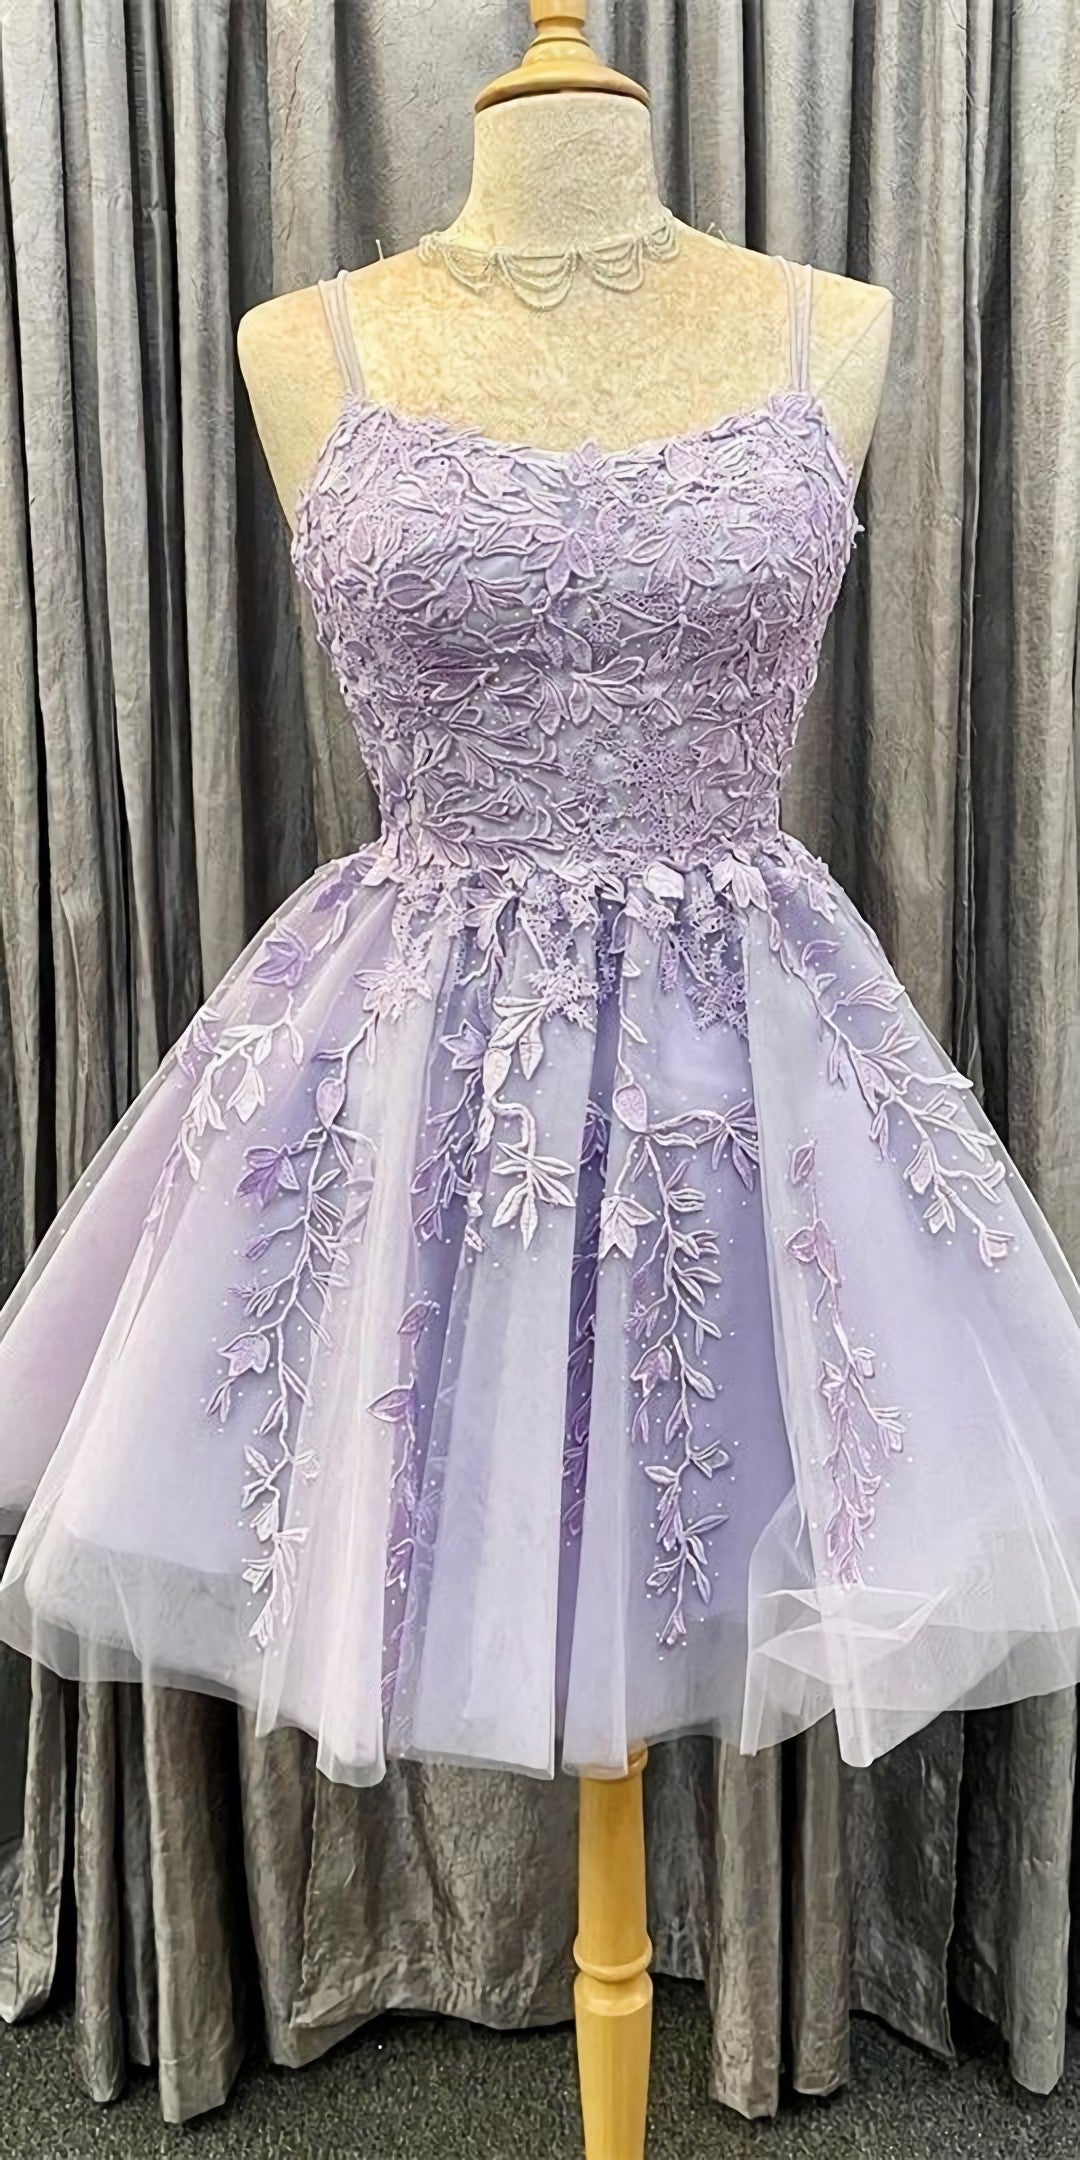 Bridesmaid Dresses Lavender, Princess Short Lavender A Line Lace Appliqued Homecoming Dress, Party Dress